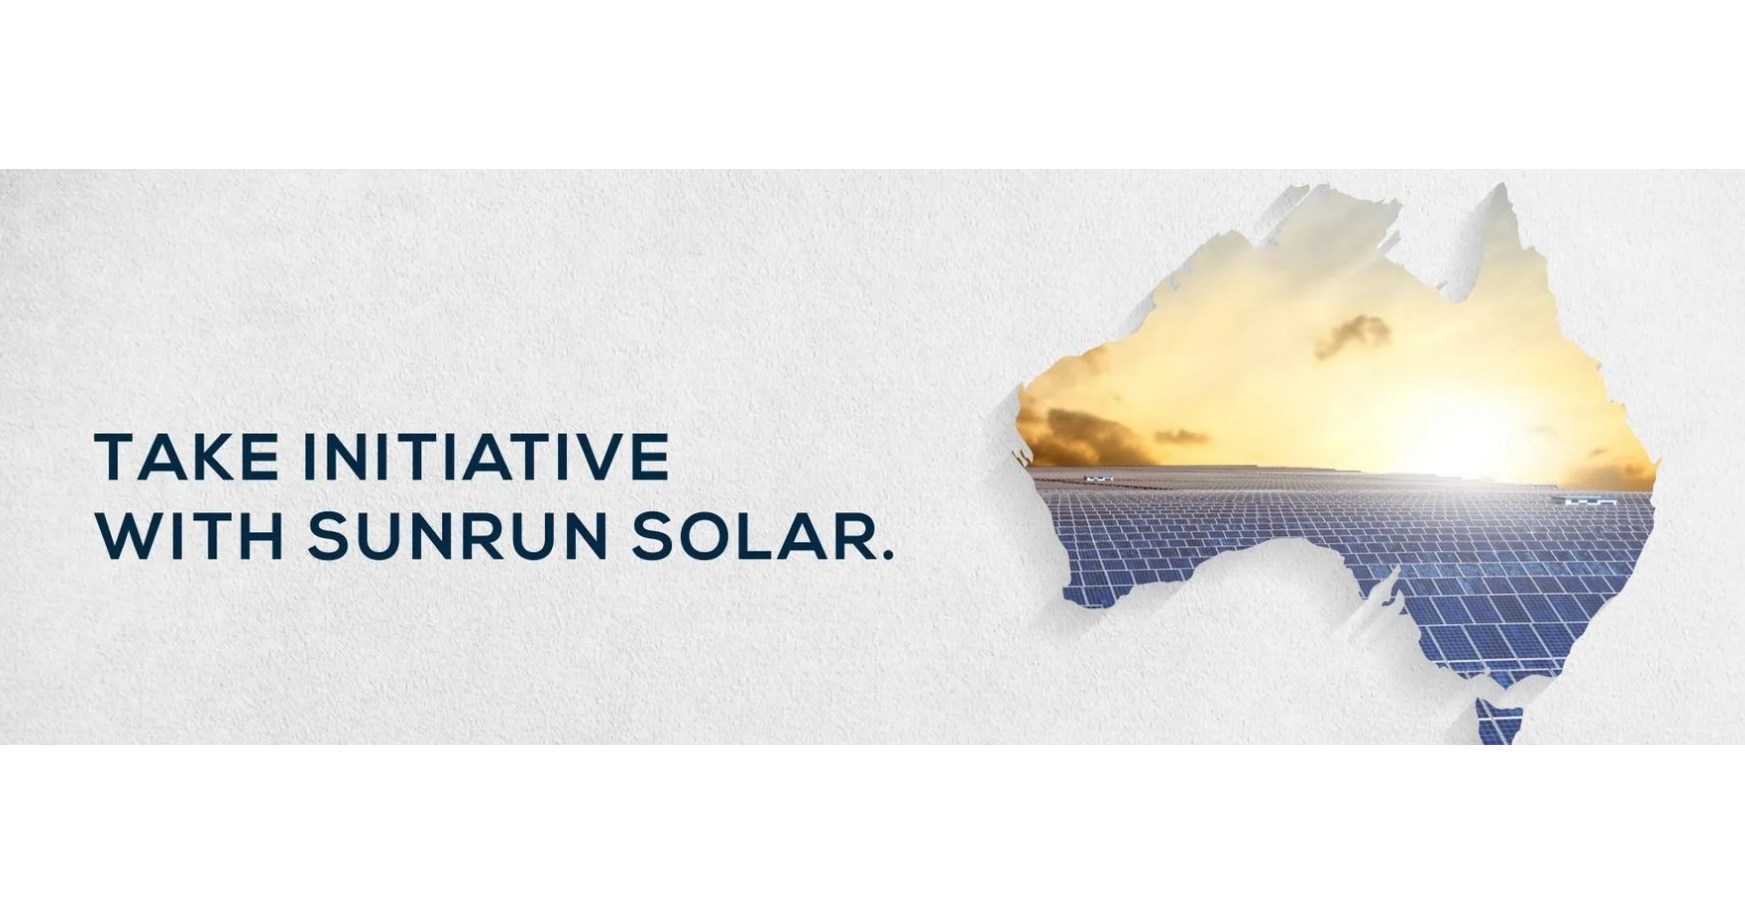 Sunrun Solar Helps Small Businesses Take Advantage of Solar Discount - PRNewswire